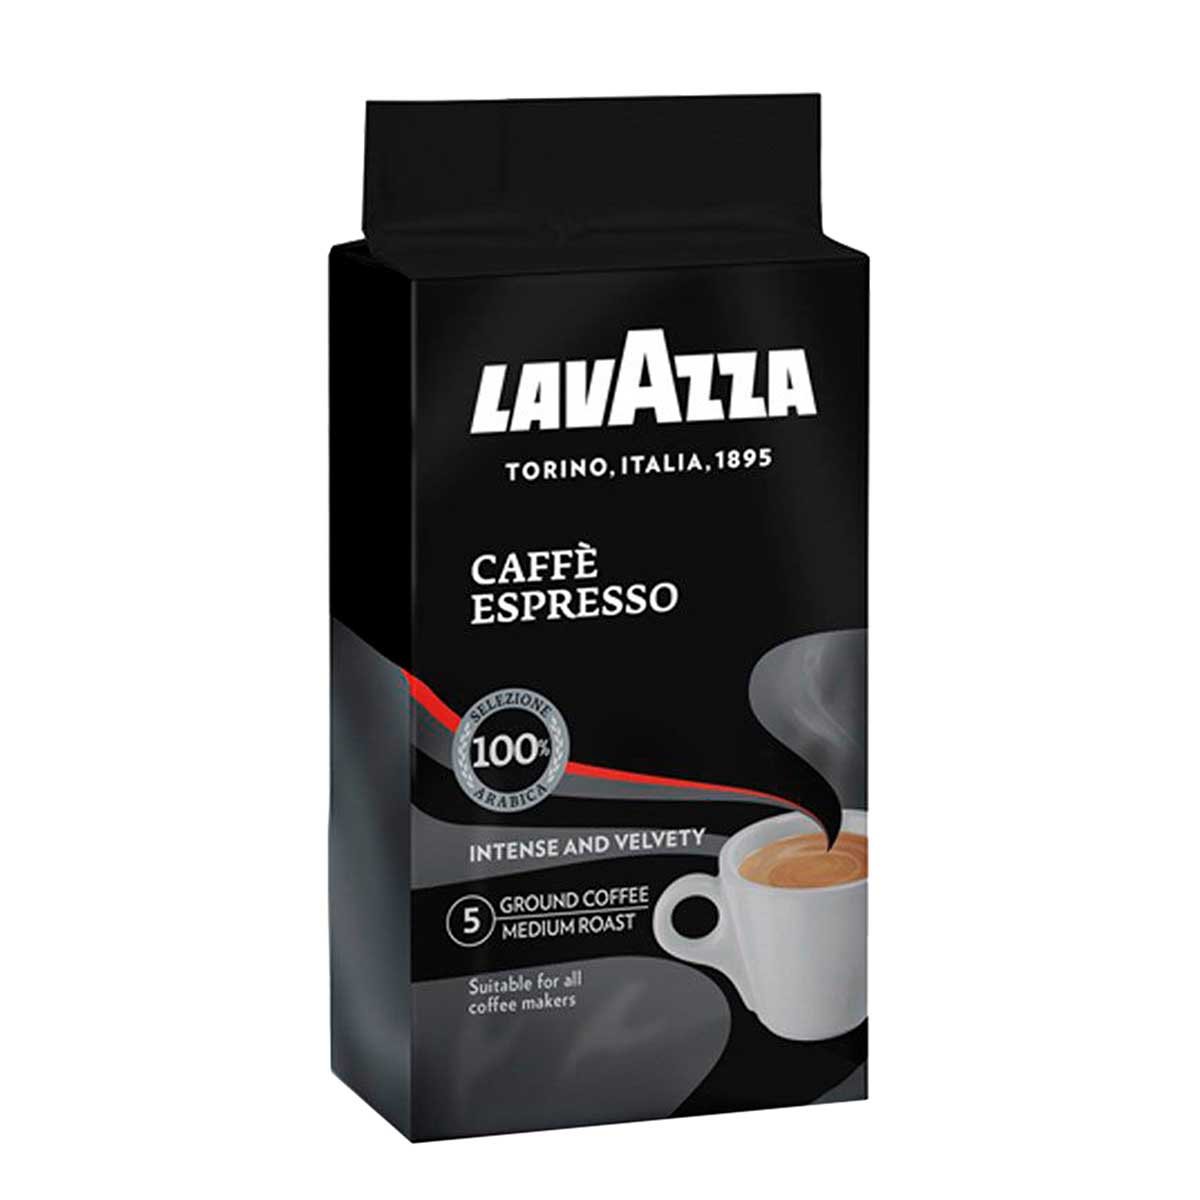 Кофе молотый lavazza 250 г. Кофе молотый Lavazza Espresso italiano Classico 250 г. Кофе молотый Lavazza Espresso 250 гр. Кофе Лавацца эспрессо молотый в/у 250г. Кофе Лавацца 250г кафе эспрессо молотый.